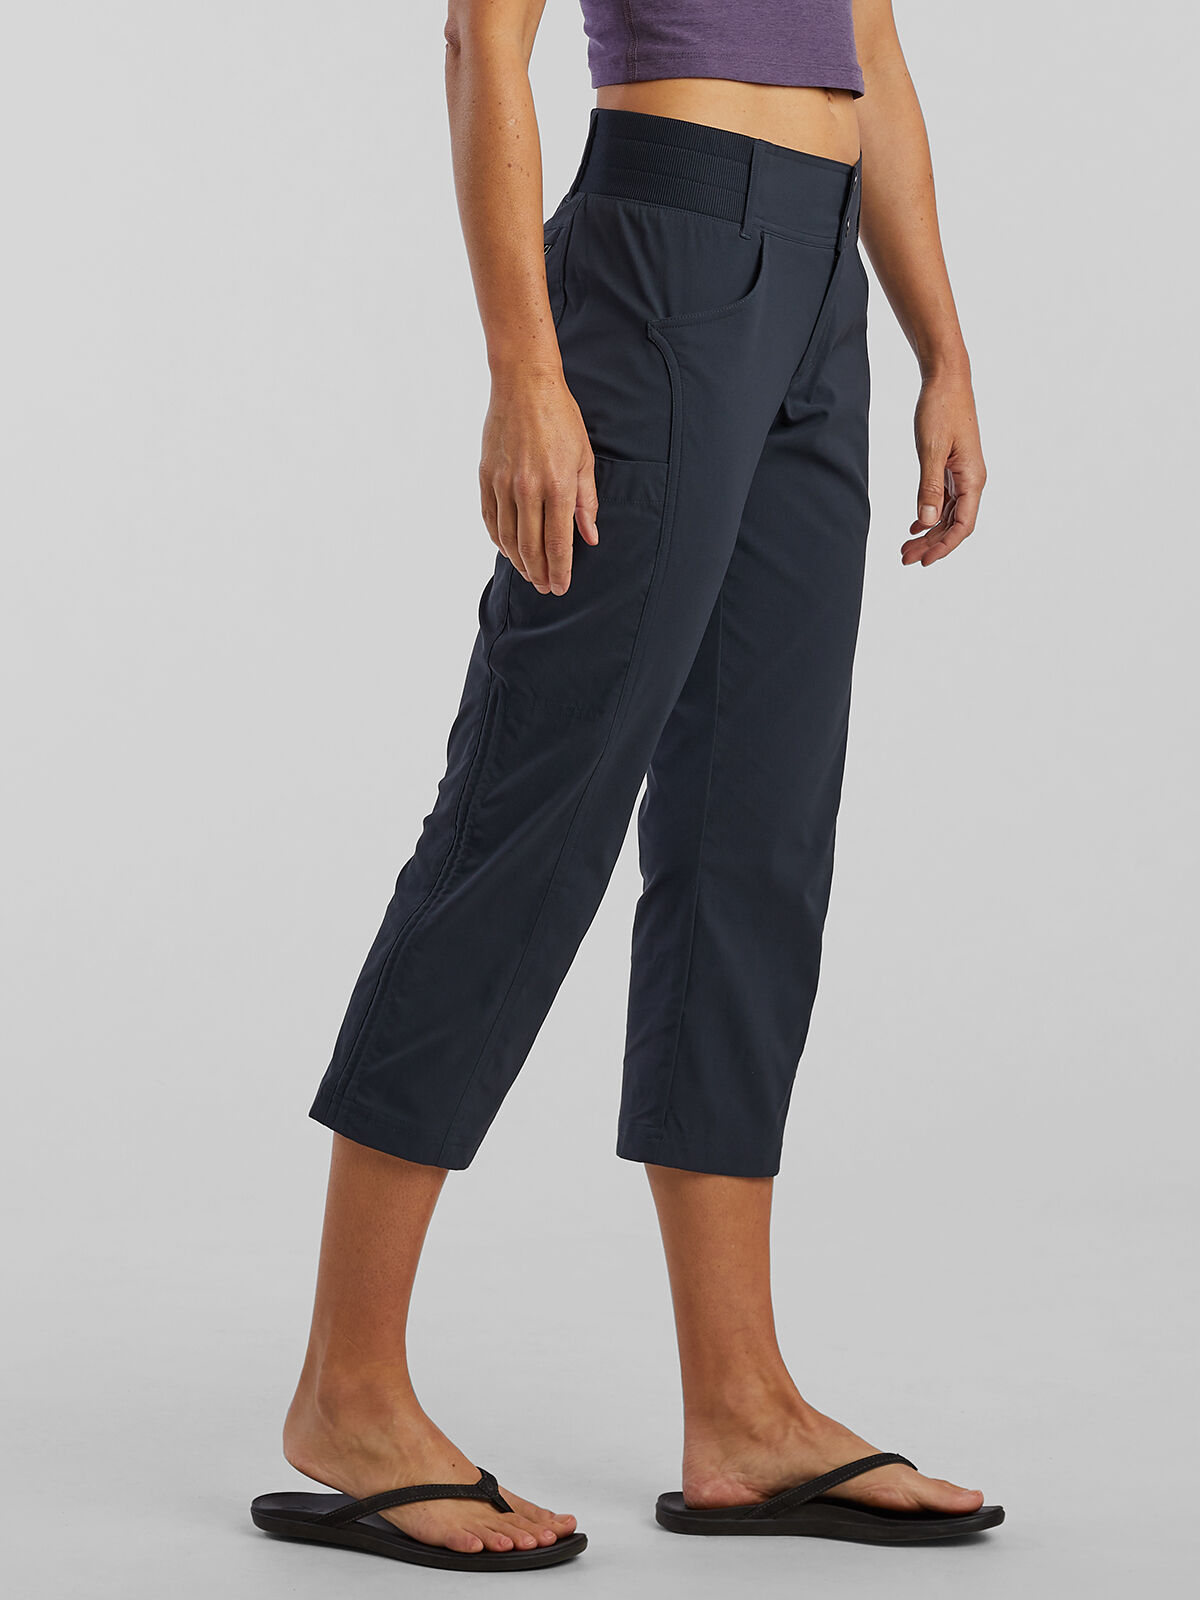 Cropped & Capri Pants for Women | J.Jill